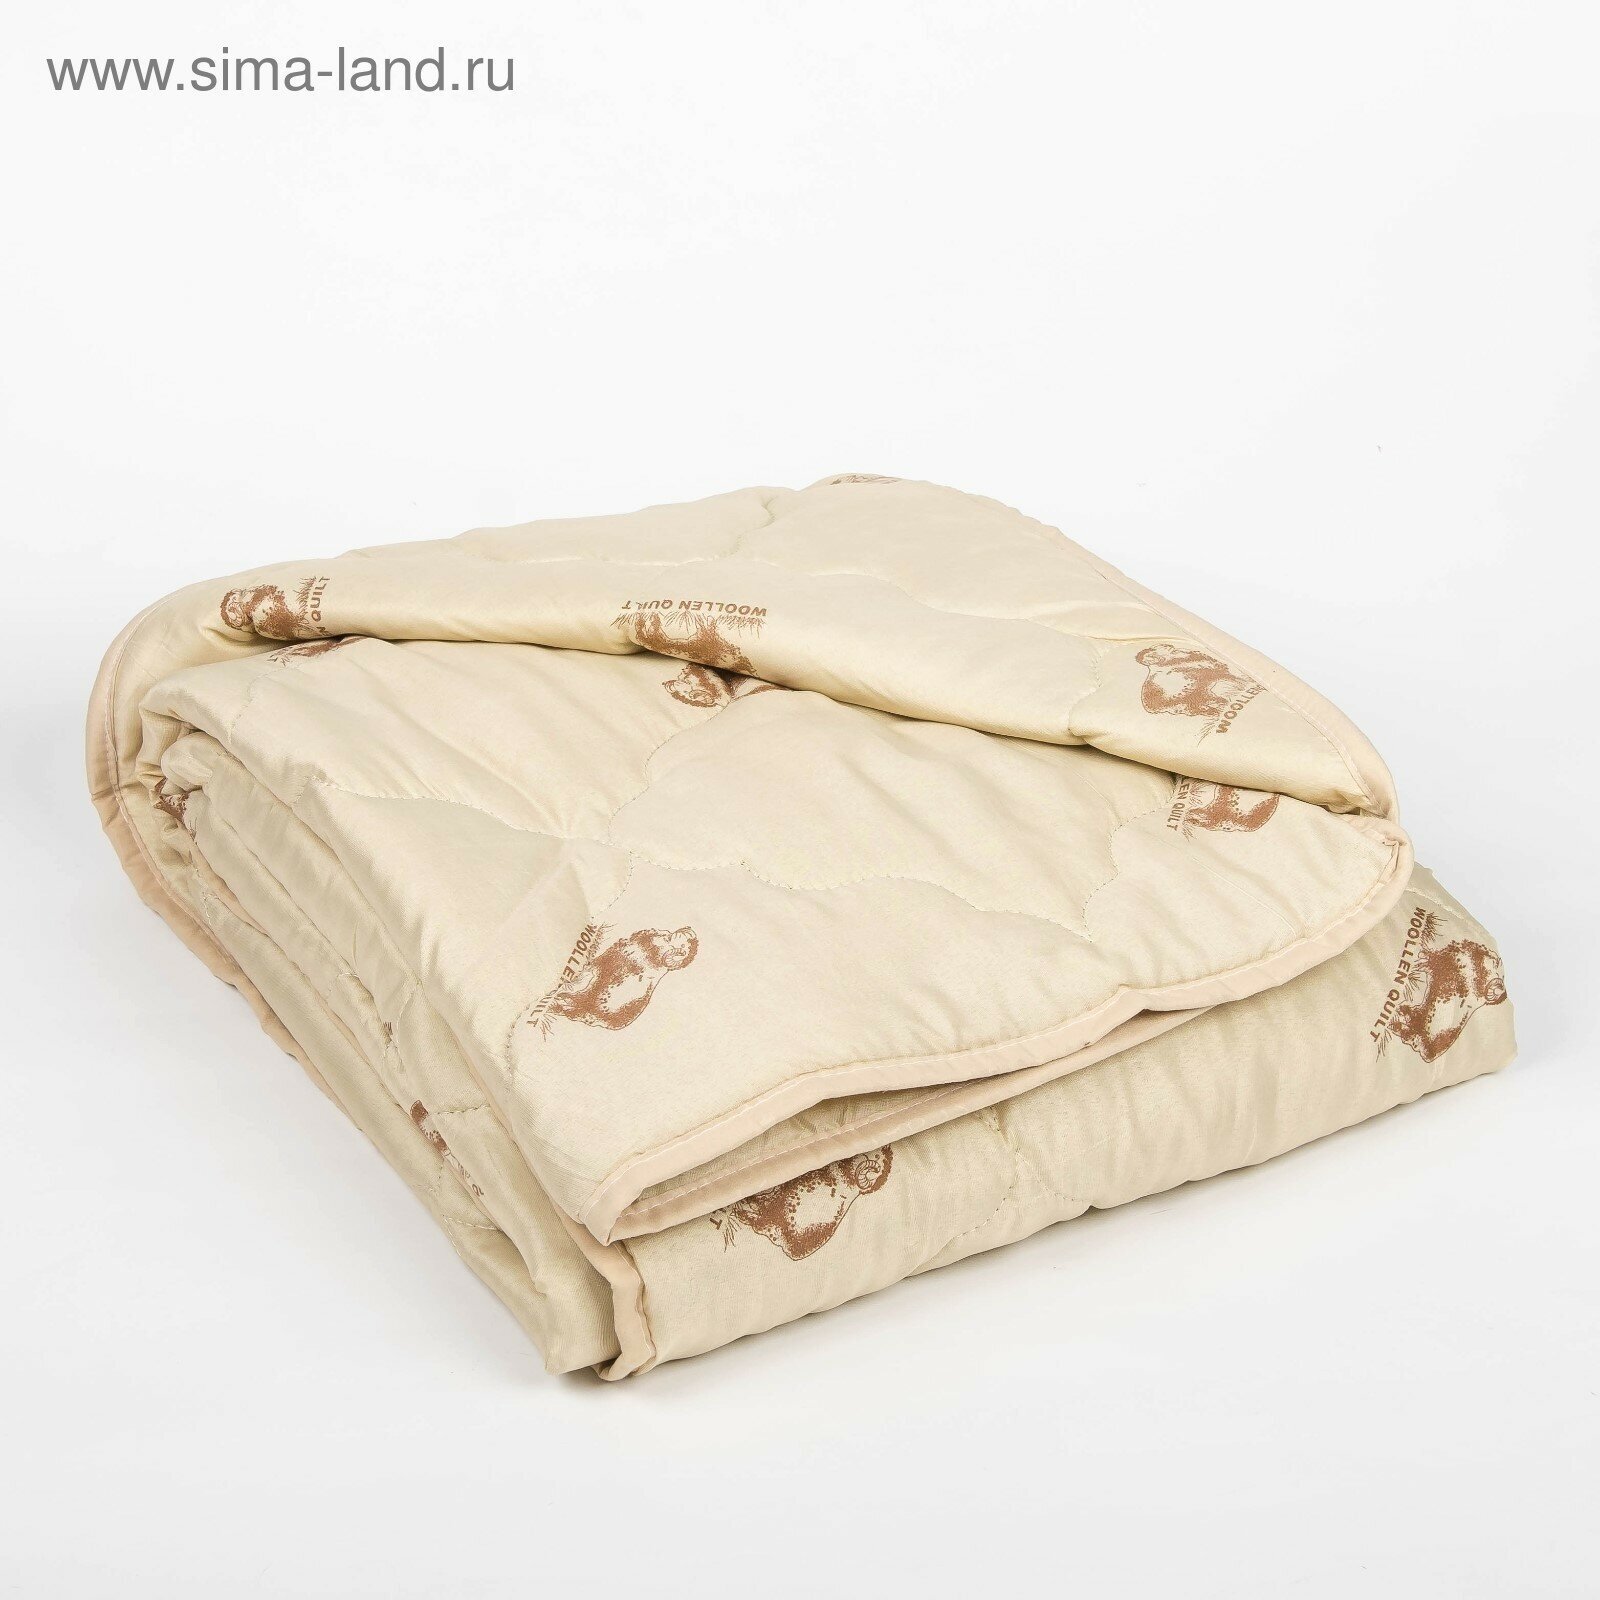 Одеяло облегчённое "Овечья шерсть", размер 200х220 ± 5 см, 200гр/м2, чехол п/э